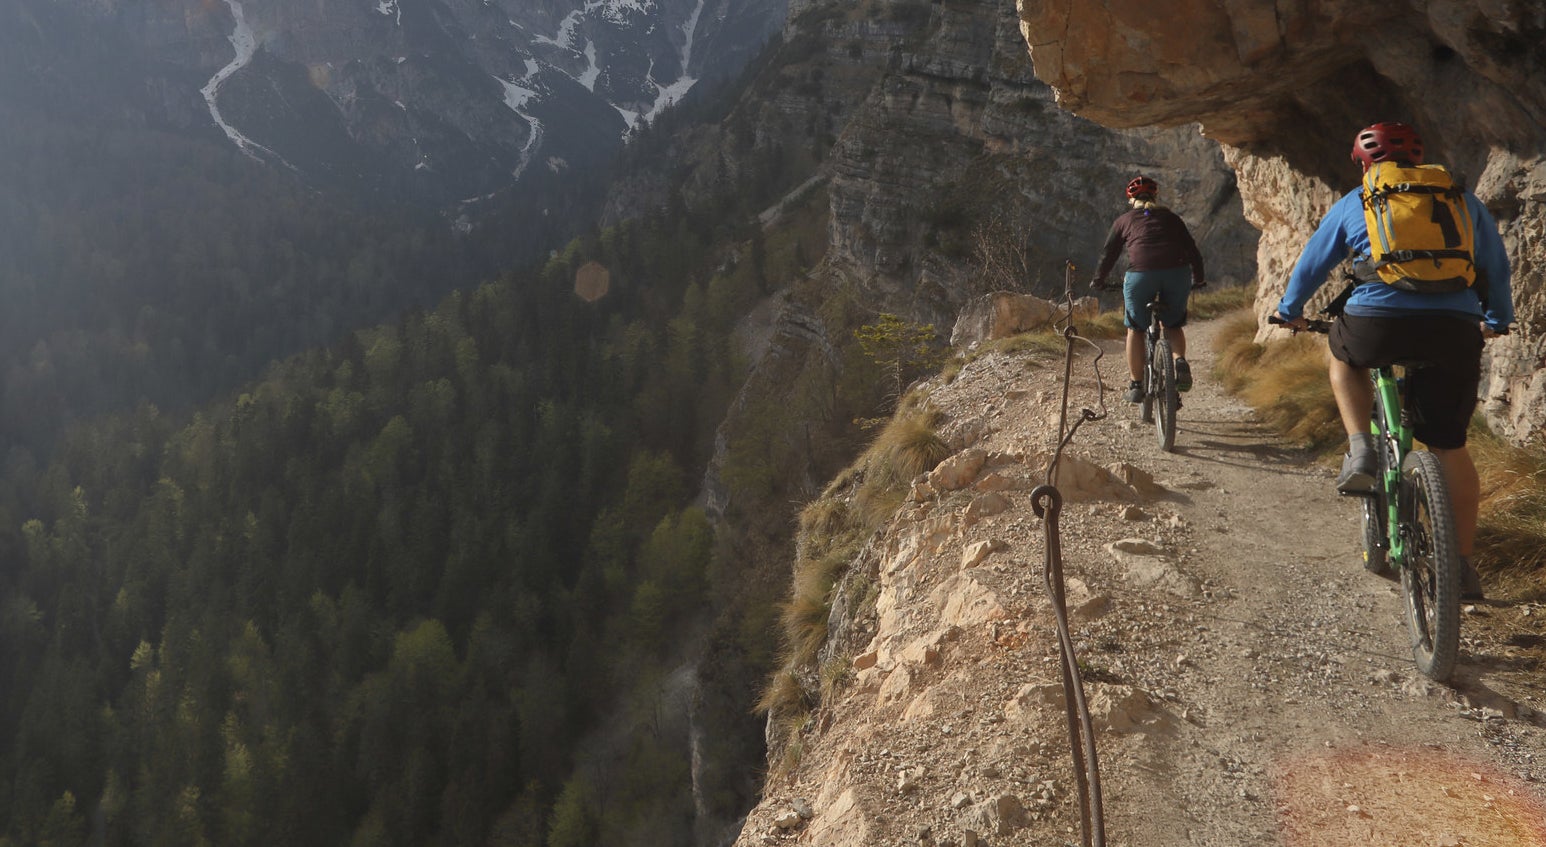 Mountain bikers alongside a steep and narrow path on the mountainside